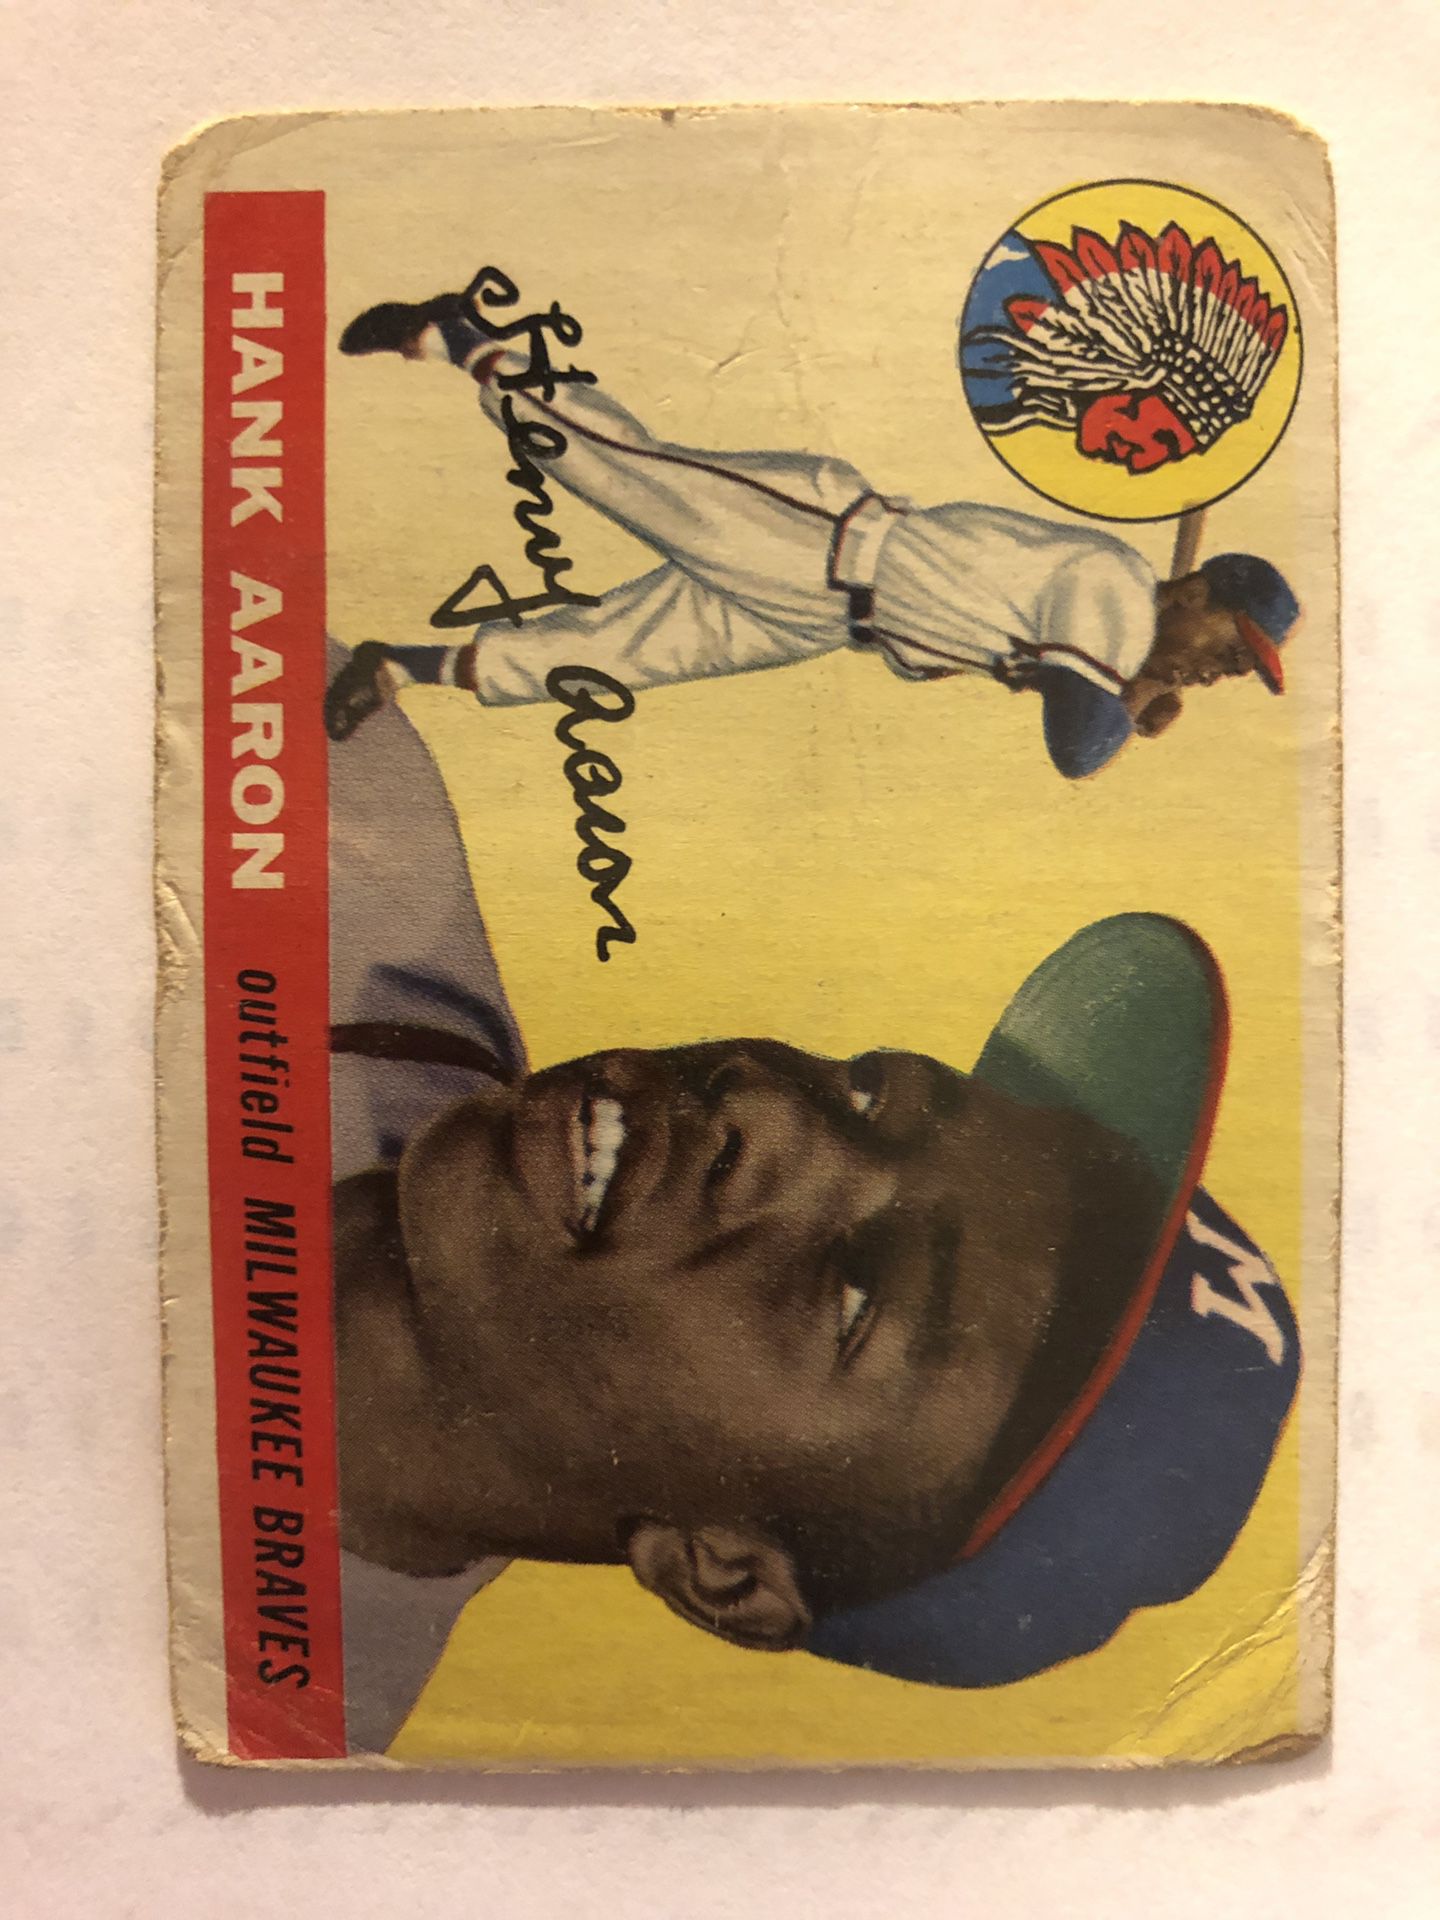 1955 Topps Hank Aaron baseball card